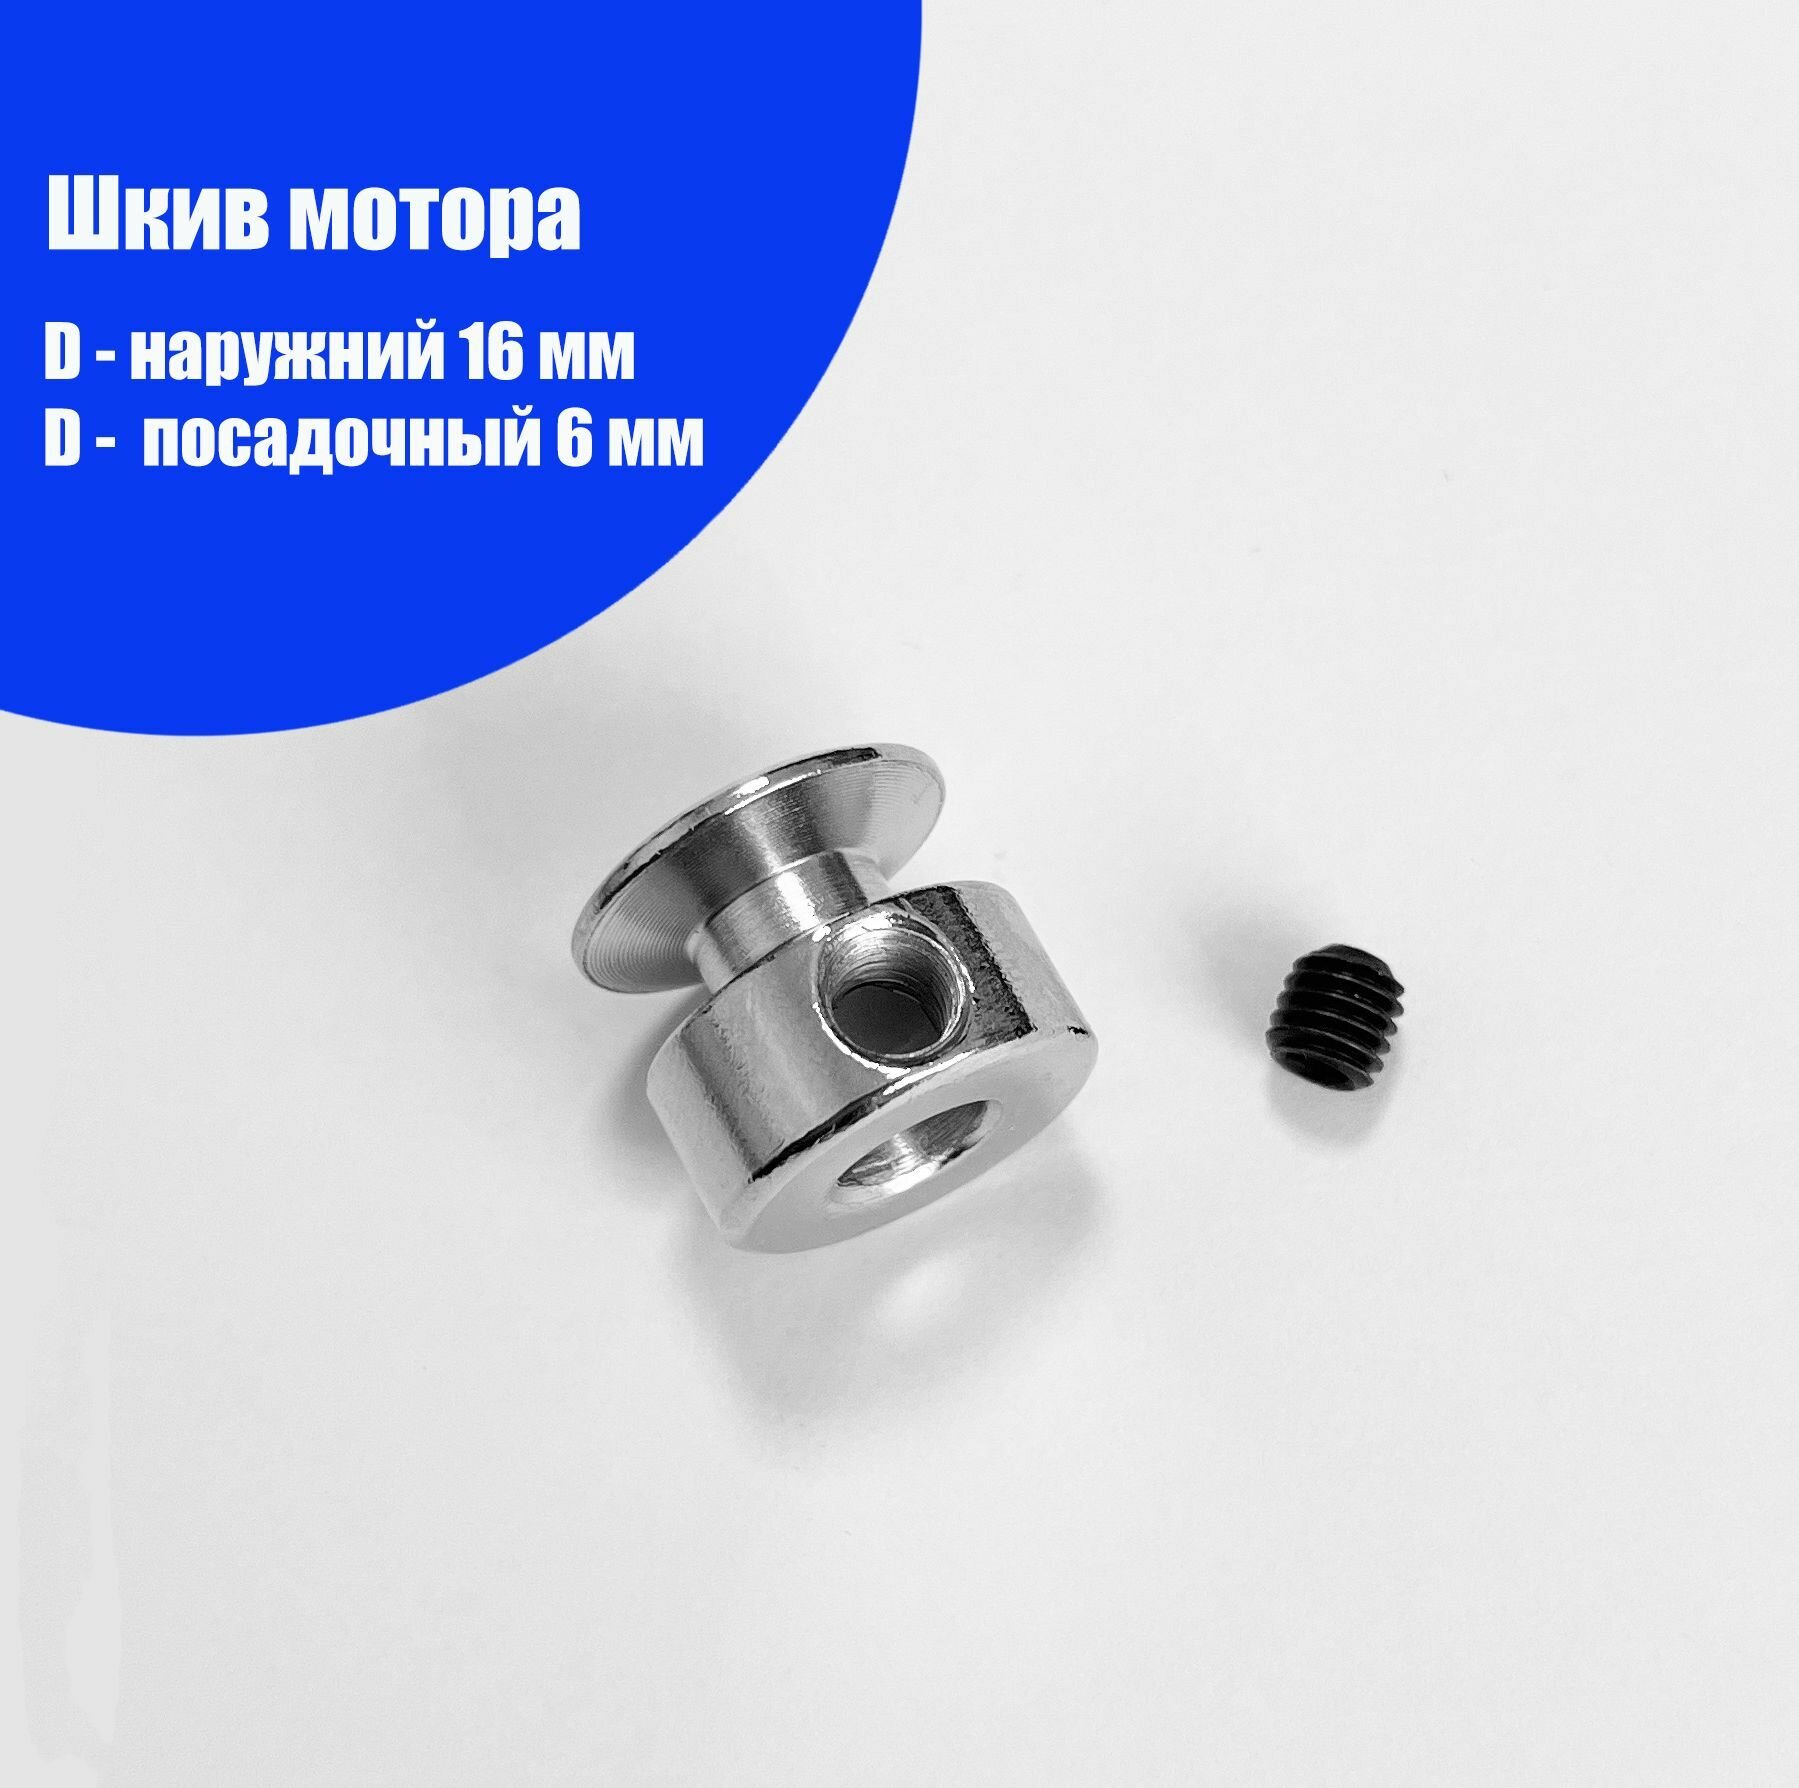 Шкив мотора (1 шт, диаметр: наруж. - 16 мм, внутр. - 6 мм) для электроприводов швейных машин.